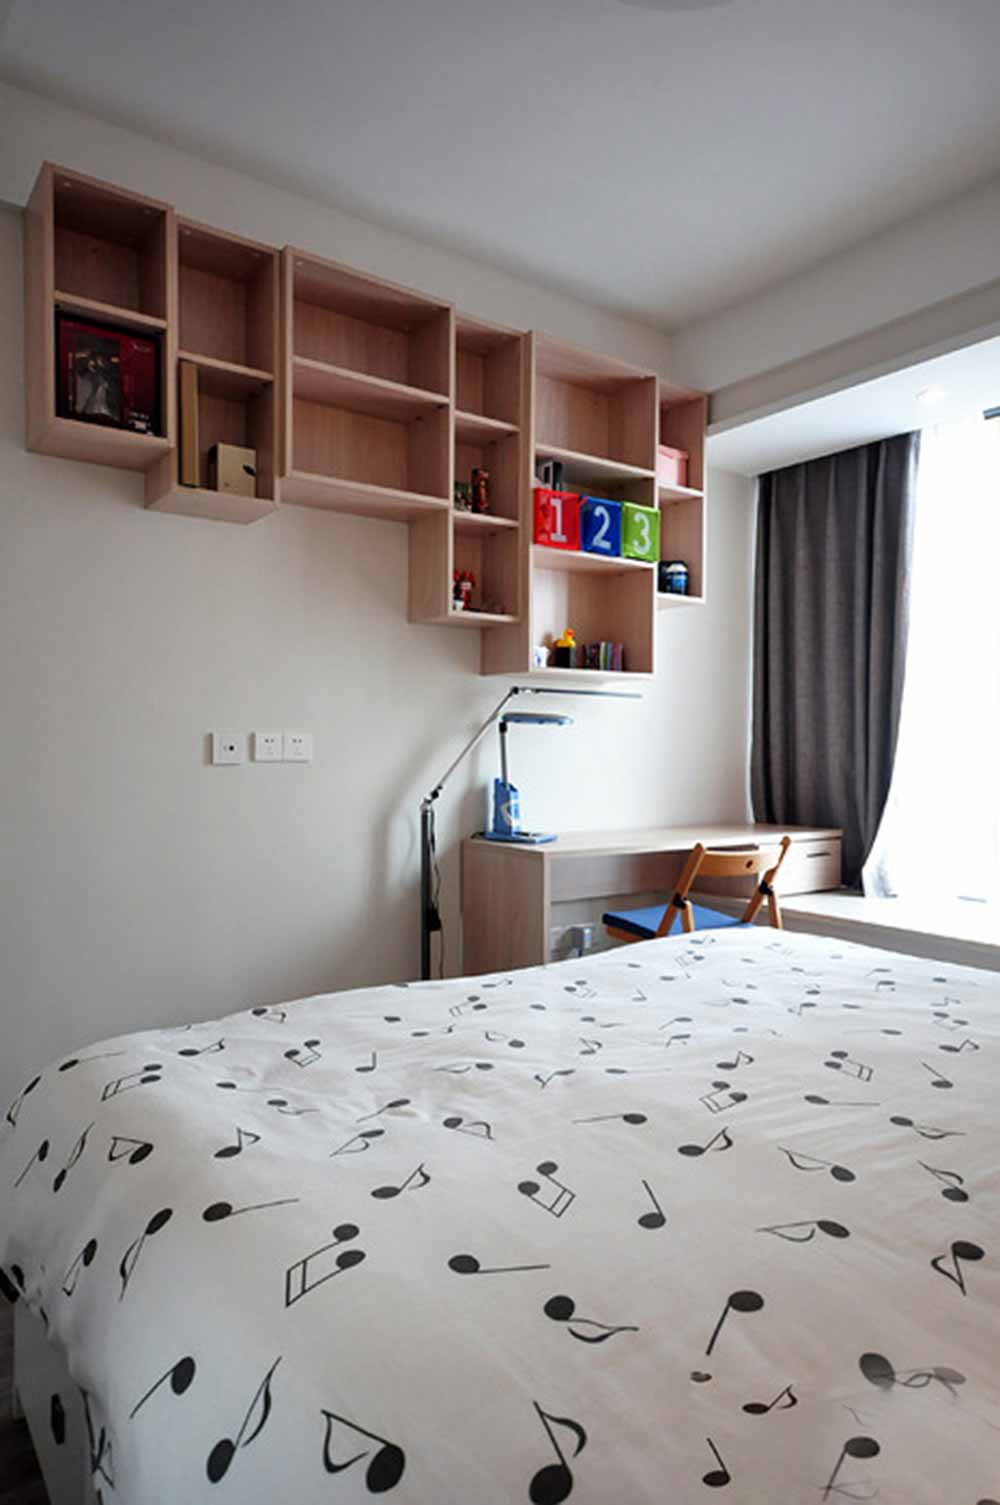 面积有限的卧室空间内，为了满足日常的收纳需求，设计师在墙面上安排了大量层板柜体，清新自然而实用。